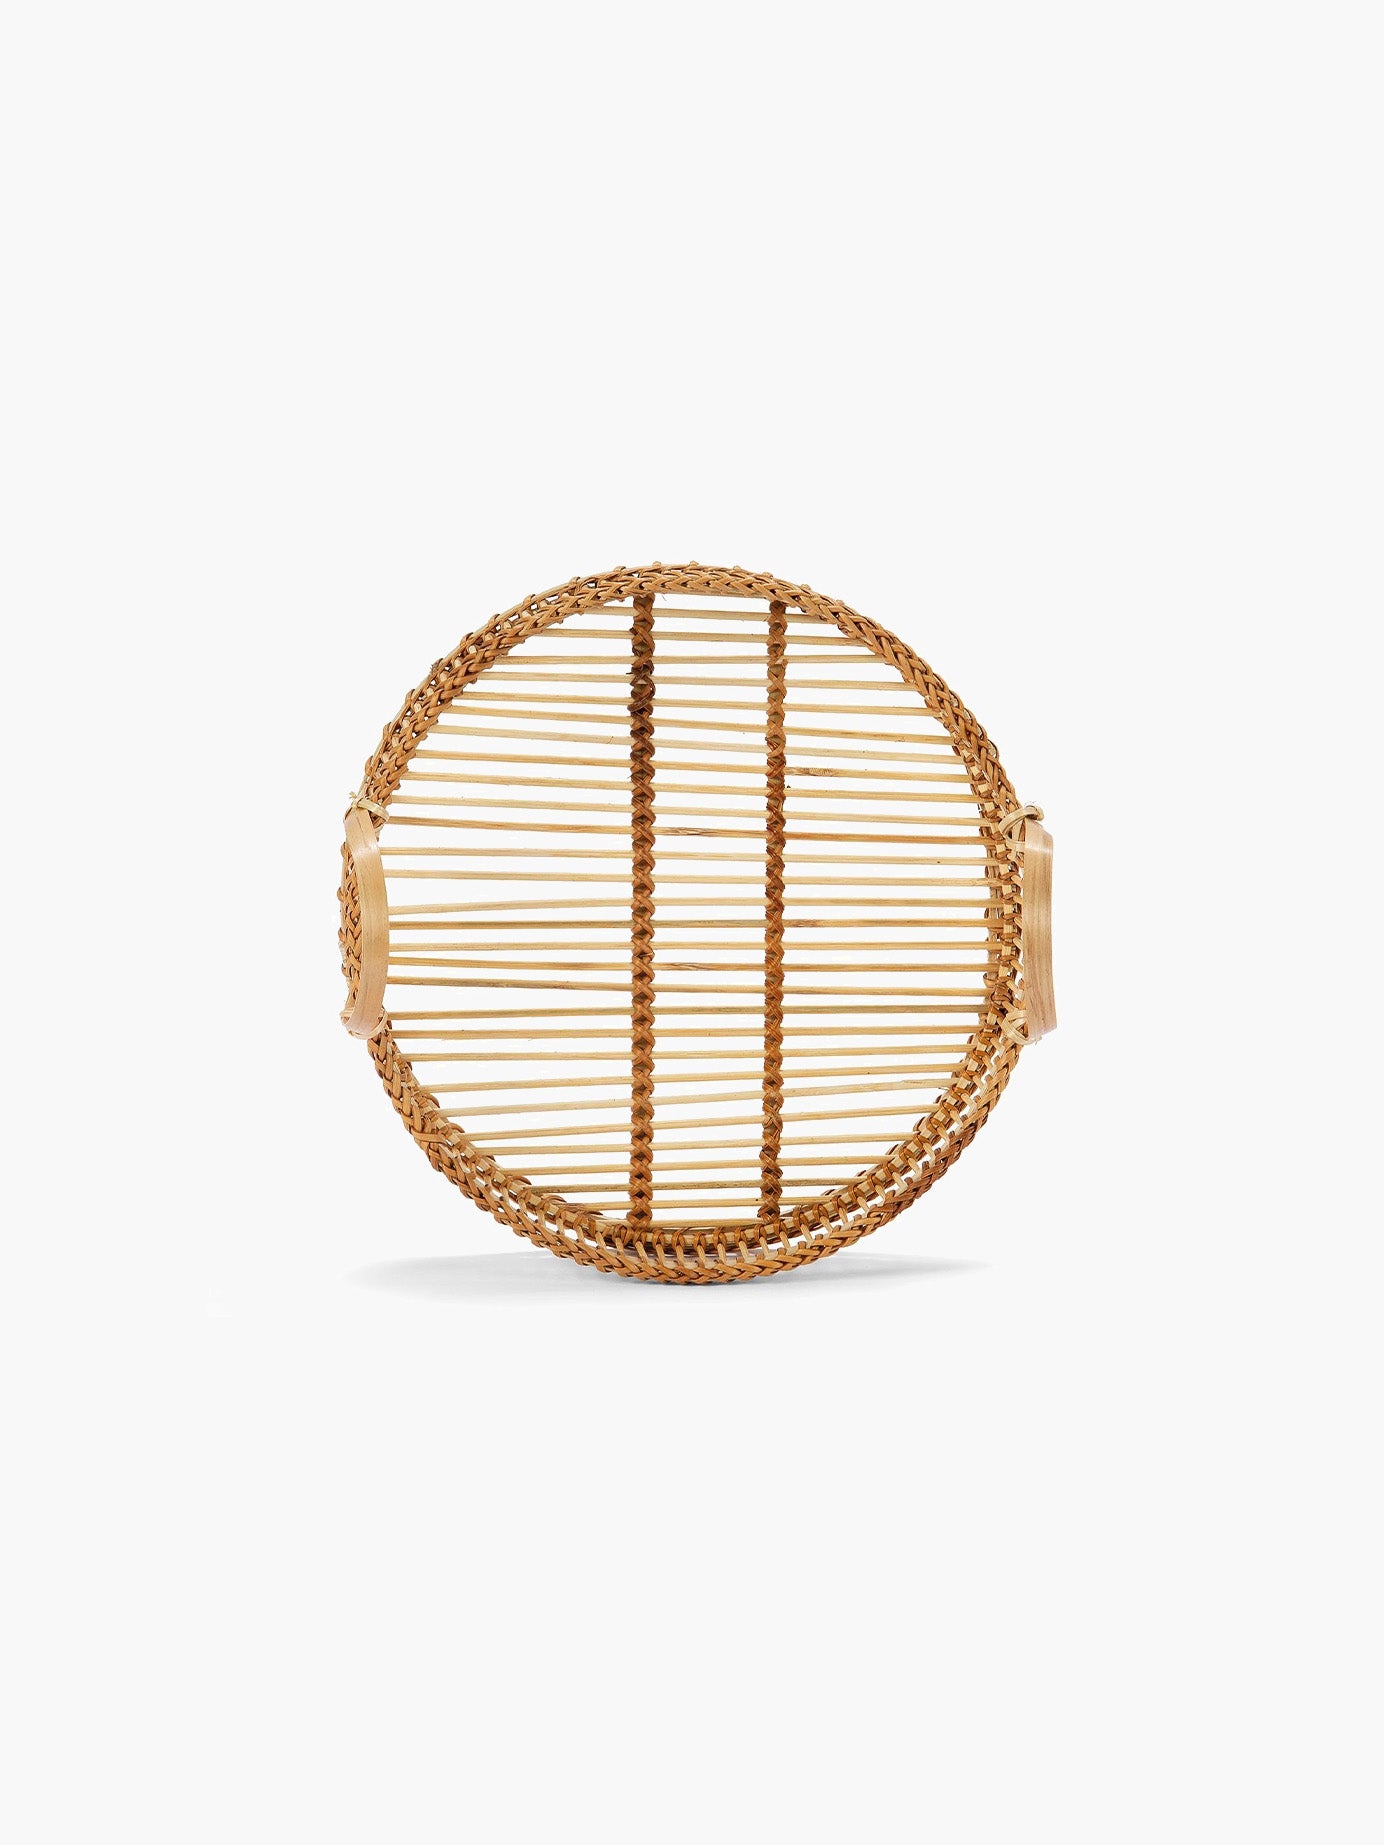 Rundes Tablett aus braunem Bambus - klein